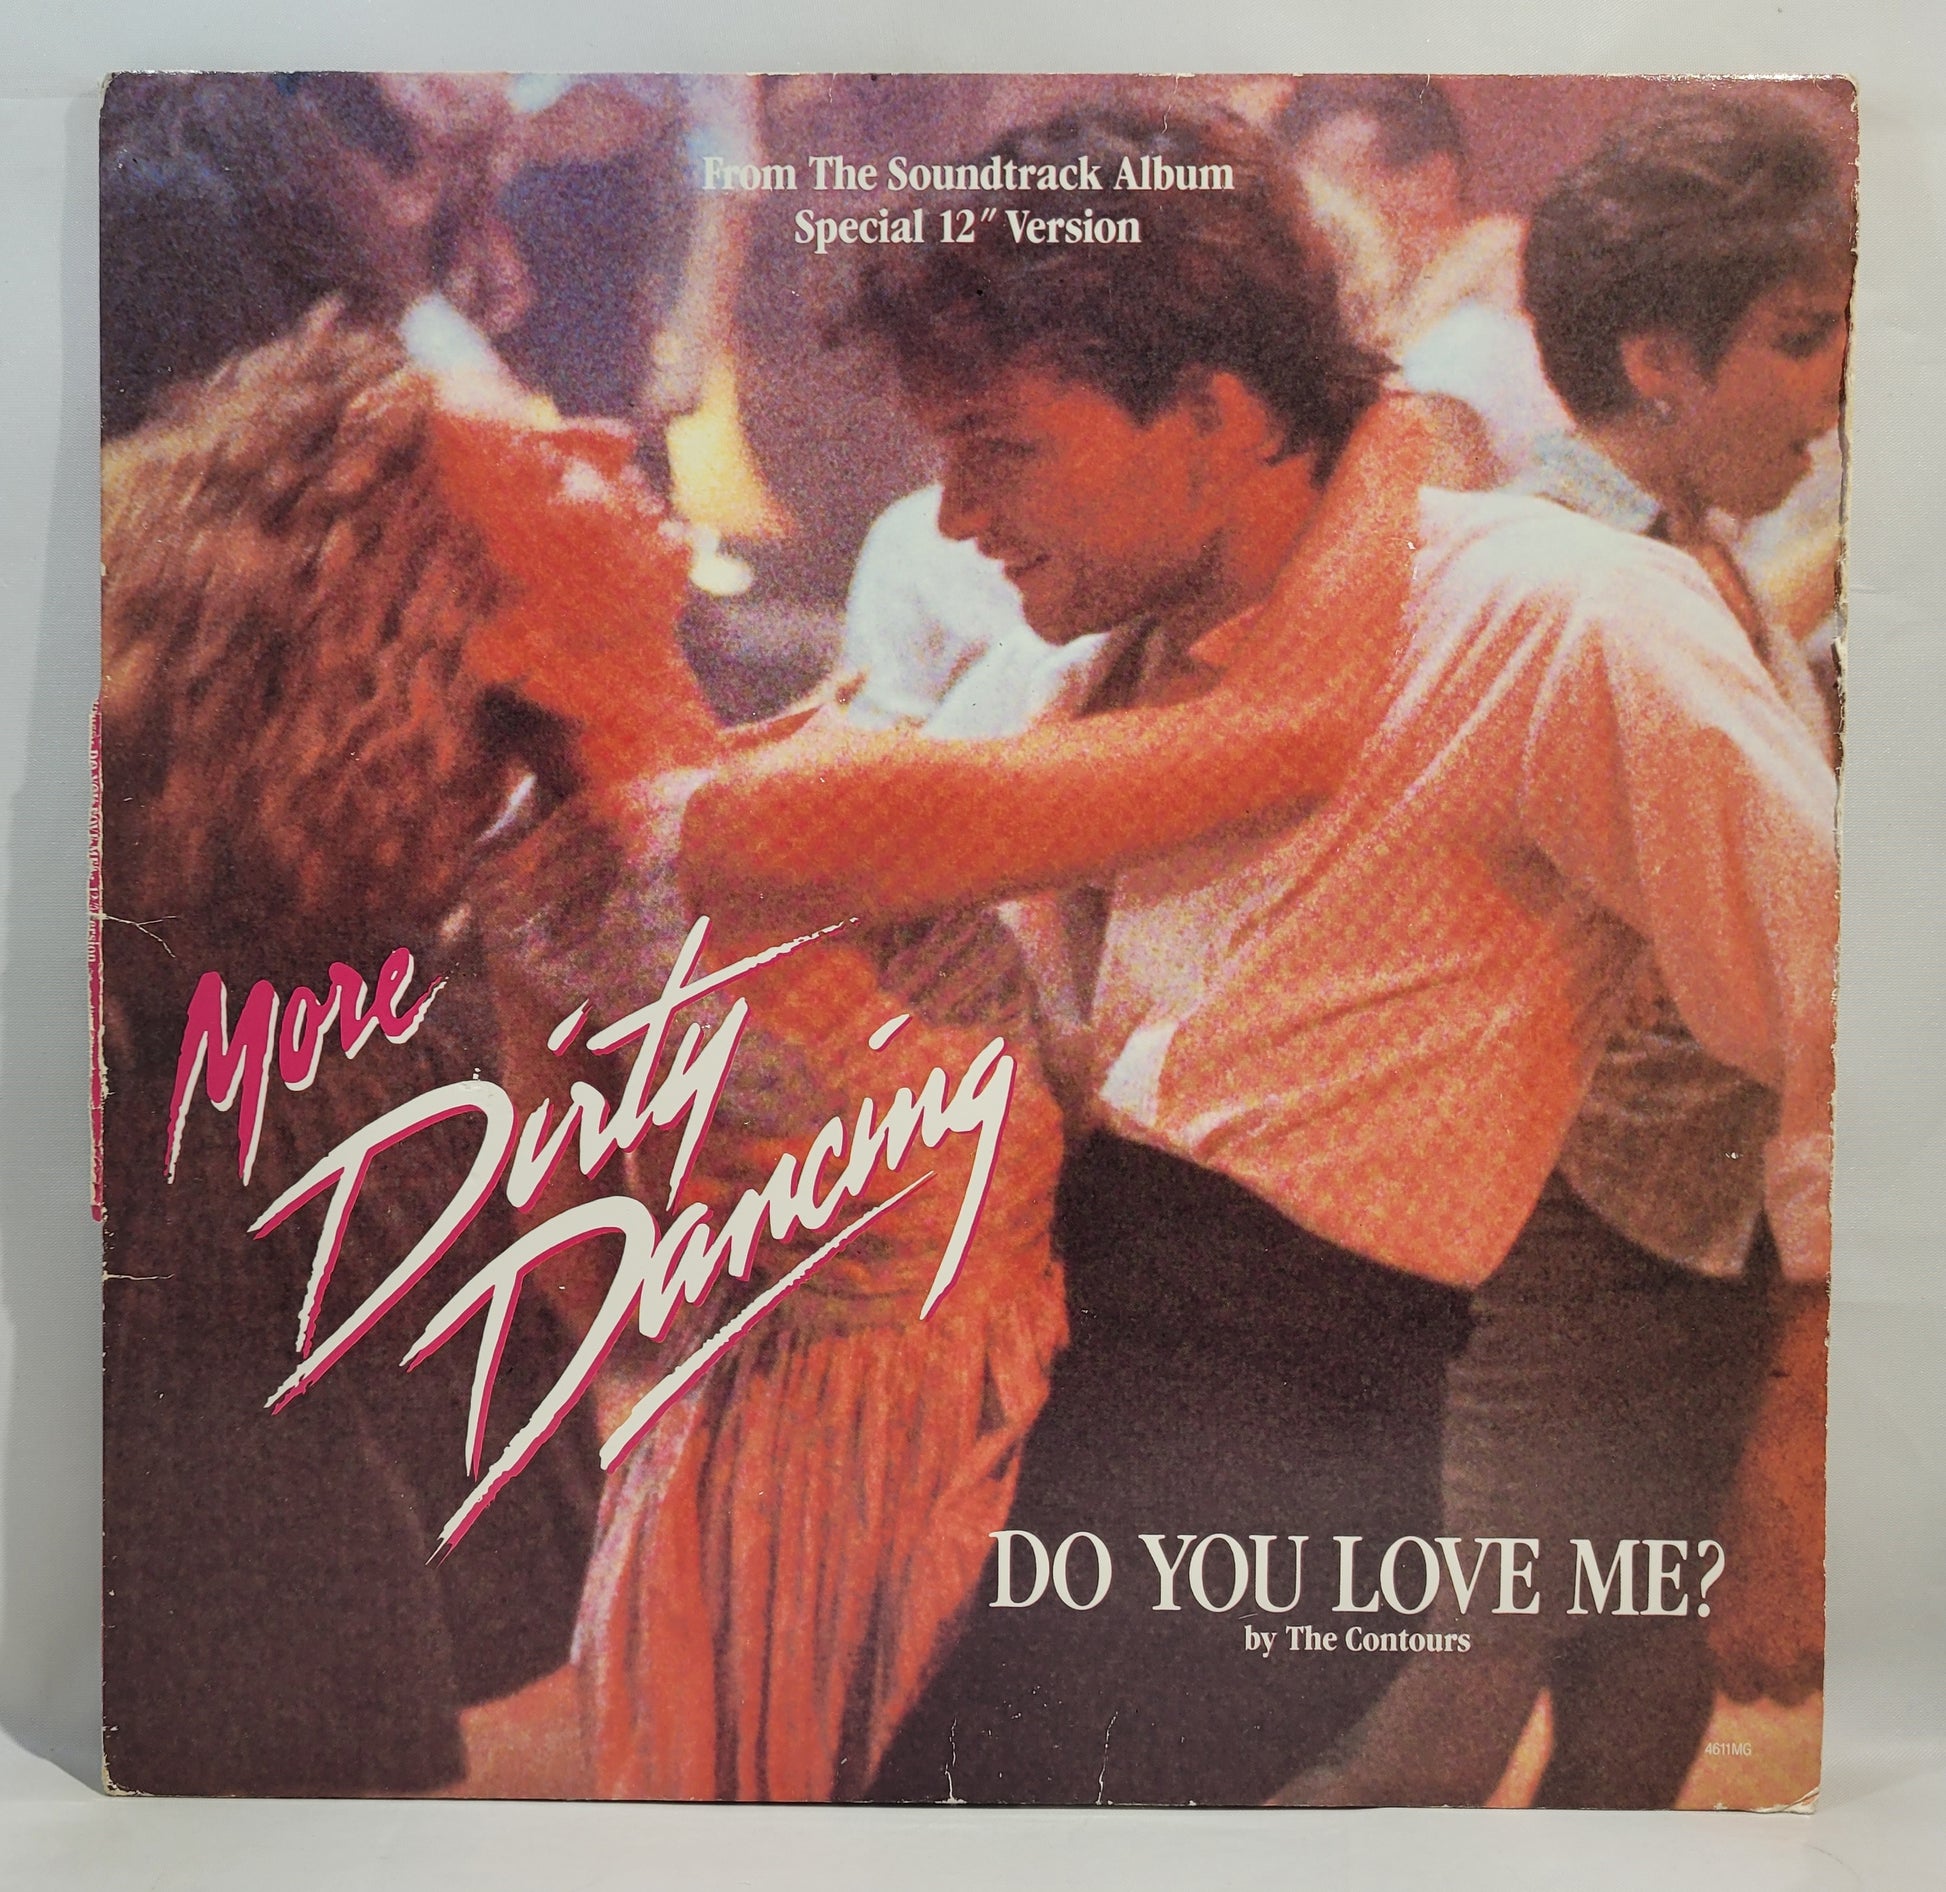 The Contous - Do You Love Me? [Vinyl Record 12" Single]